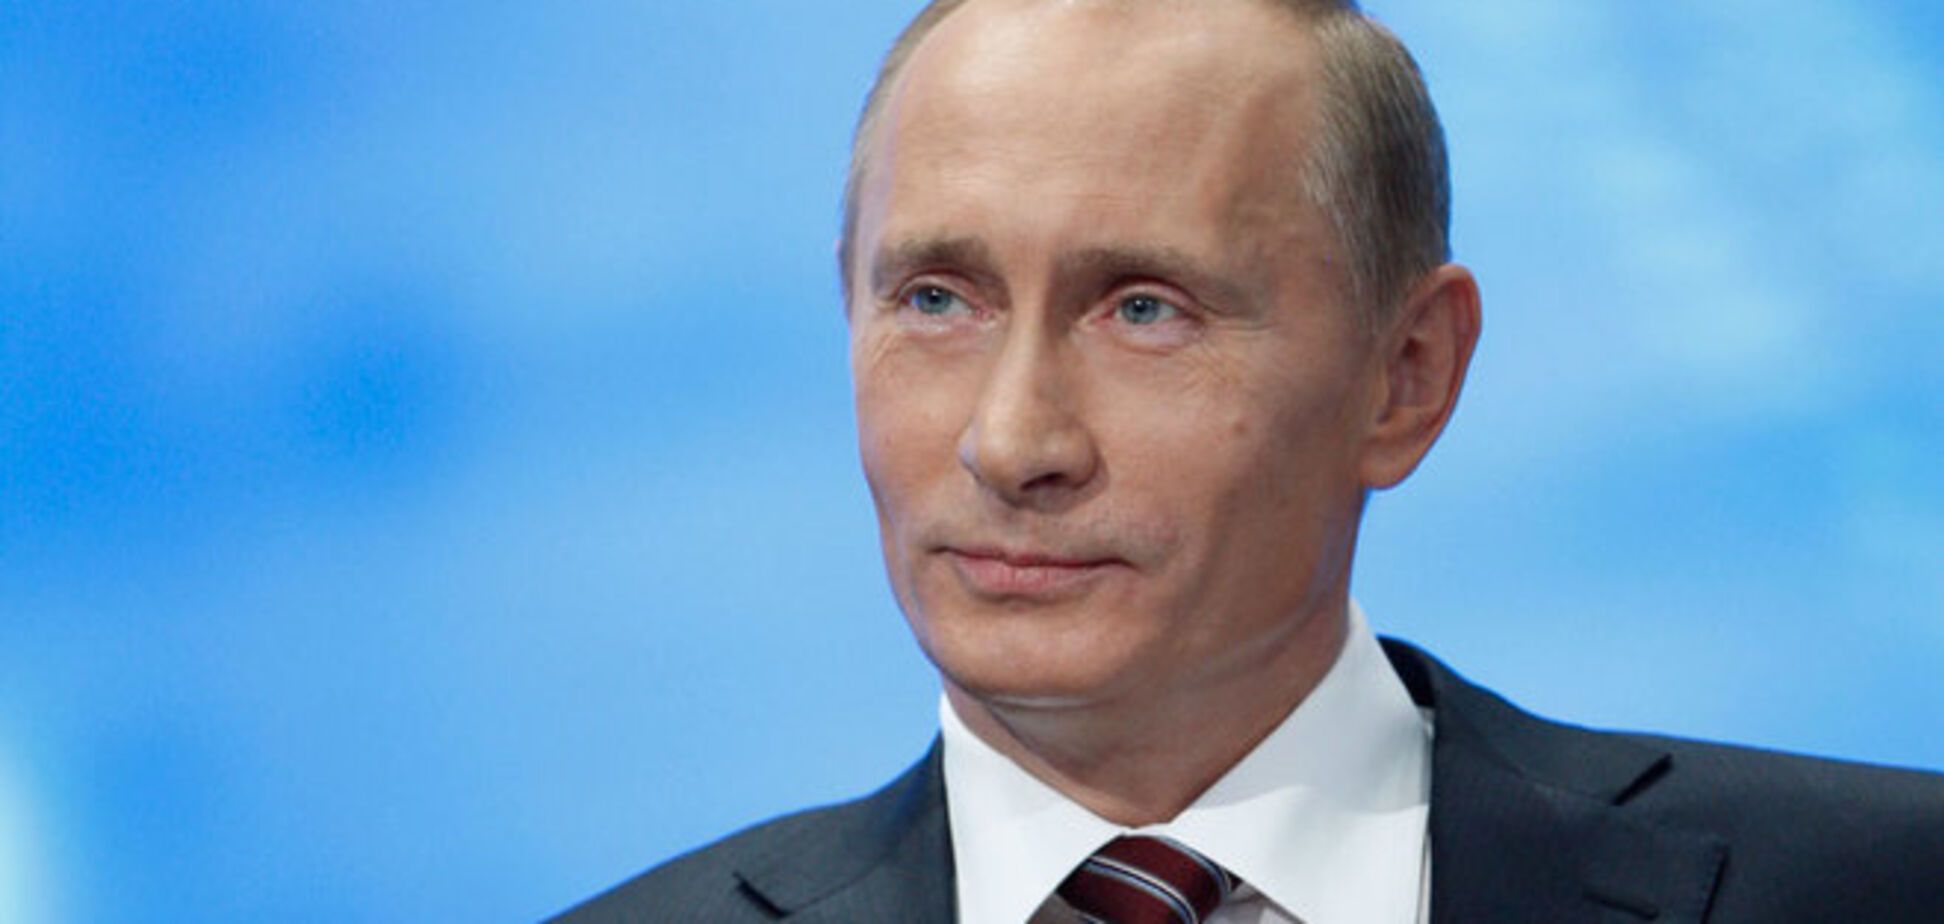 Председателем военно-промышленной комиссии РФ вместо Рогозина станет Путин - СМИ